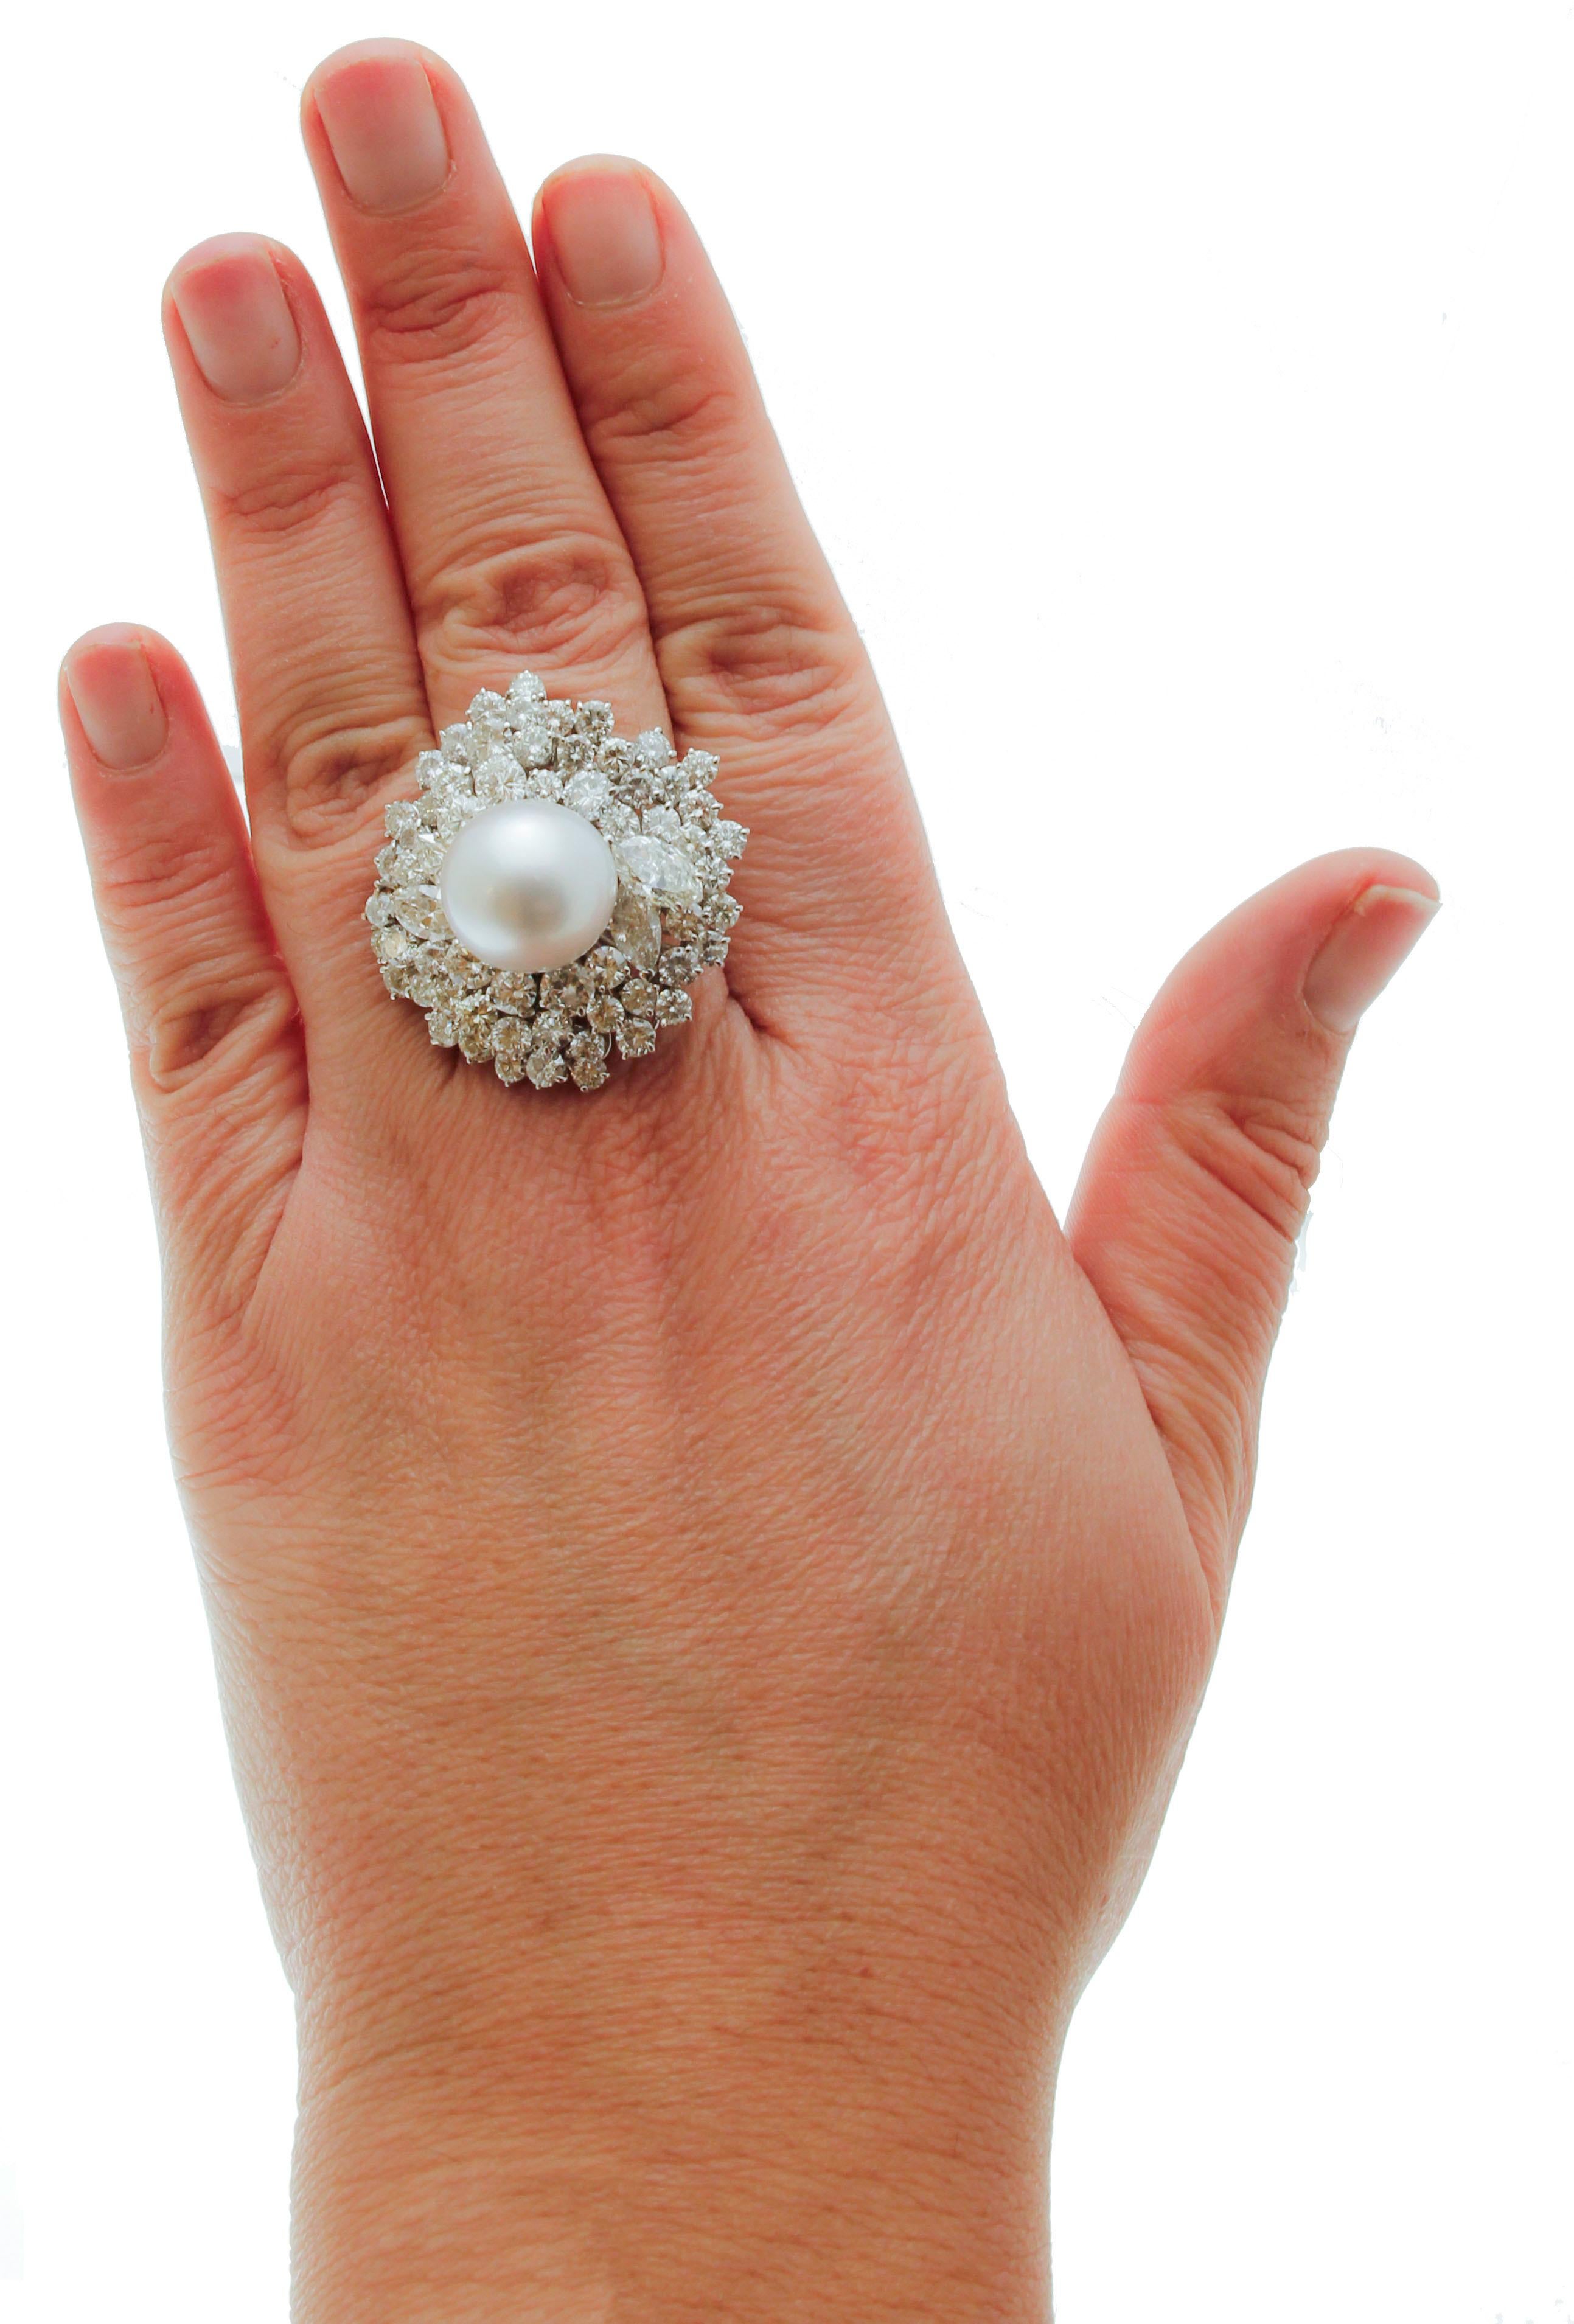 Brilliant Cut 8, 90 carat white Diamonds South Sea White Pearl, White Gold Cluster/Fashion Ring